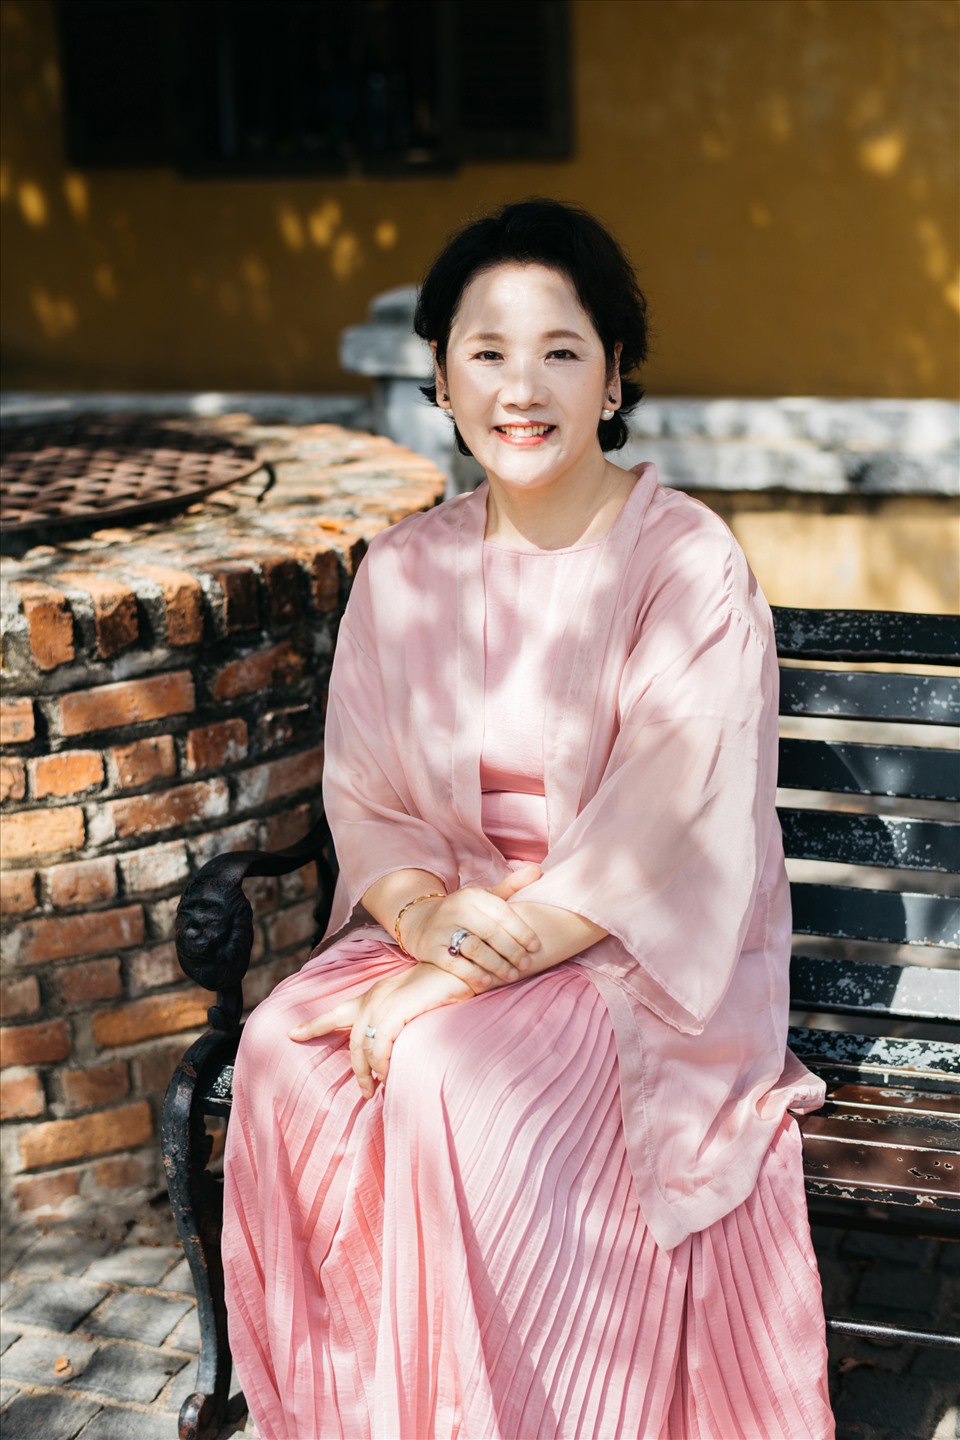 Mẹ Hari Won cũng lựa chọn voan mềm làm chất liệu chính trong trang phục của bộ ảnh, giữ những chi tiết đặc trưng của Hanbok như đường nẹp viền áo, cùng với tone màu tím nhạt tạo cái nhìn quý phái.